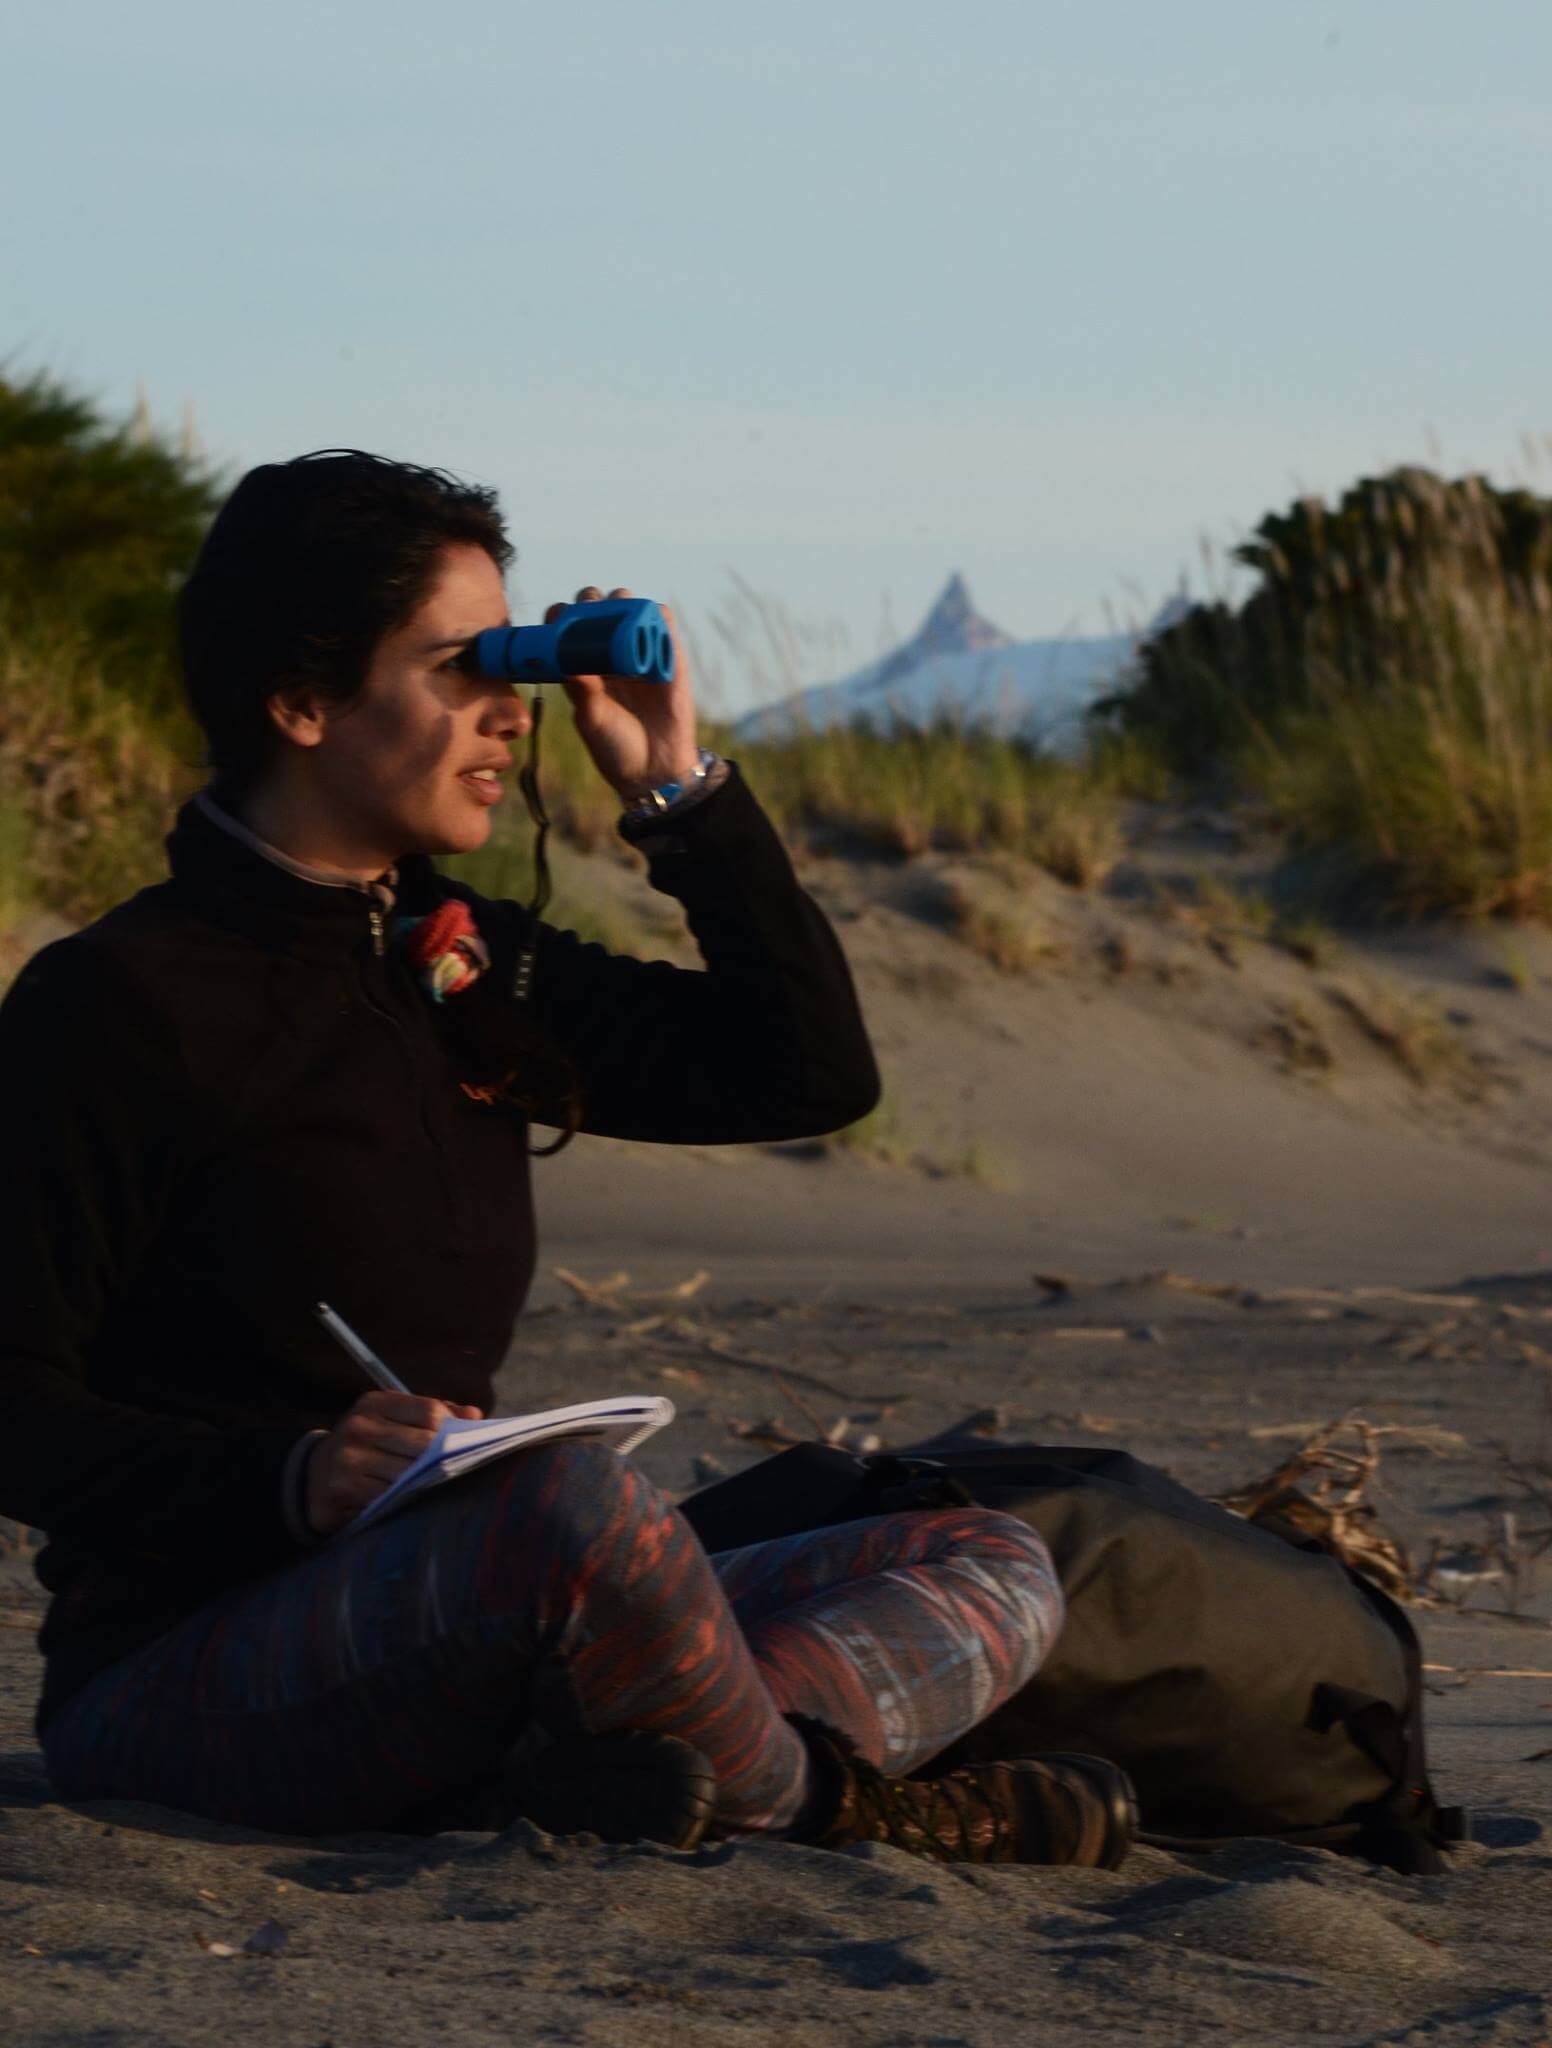 Jacqueline aplicando la metodología de avistamiento desde tierra © Aysén Mira al Mar